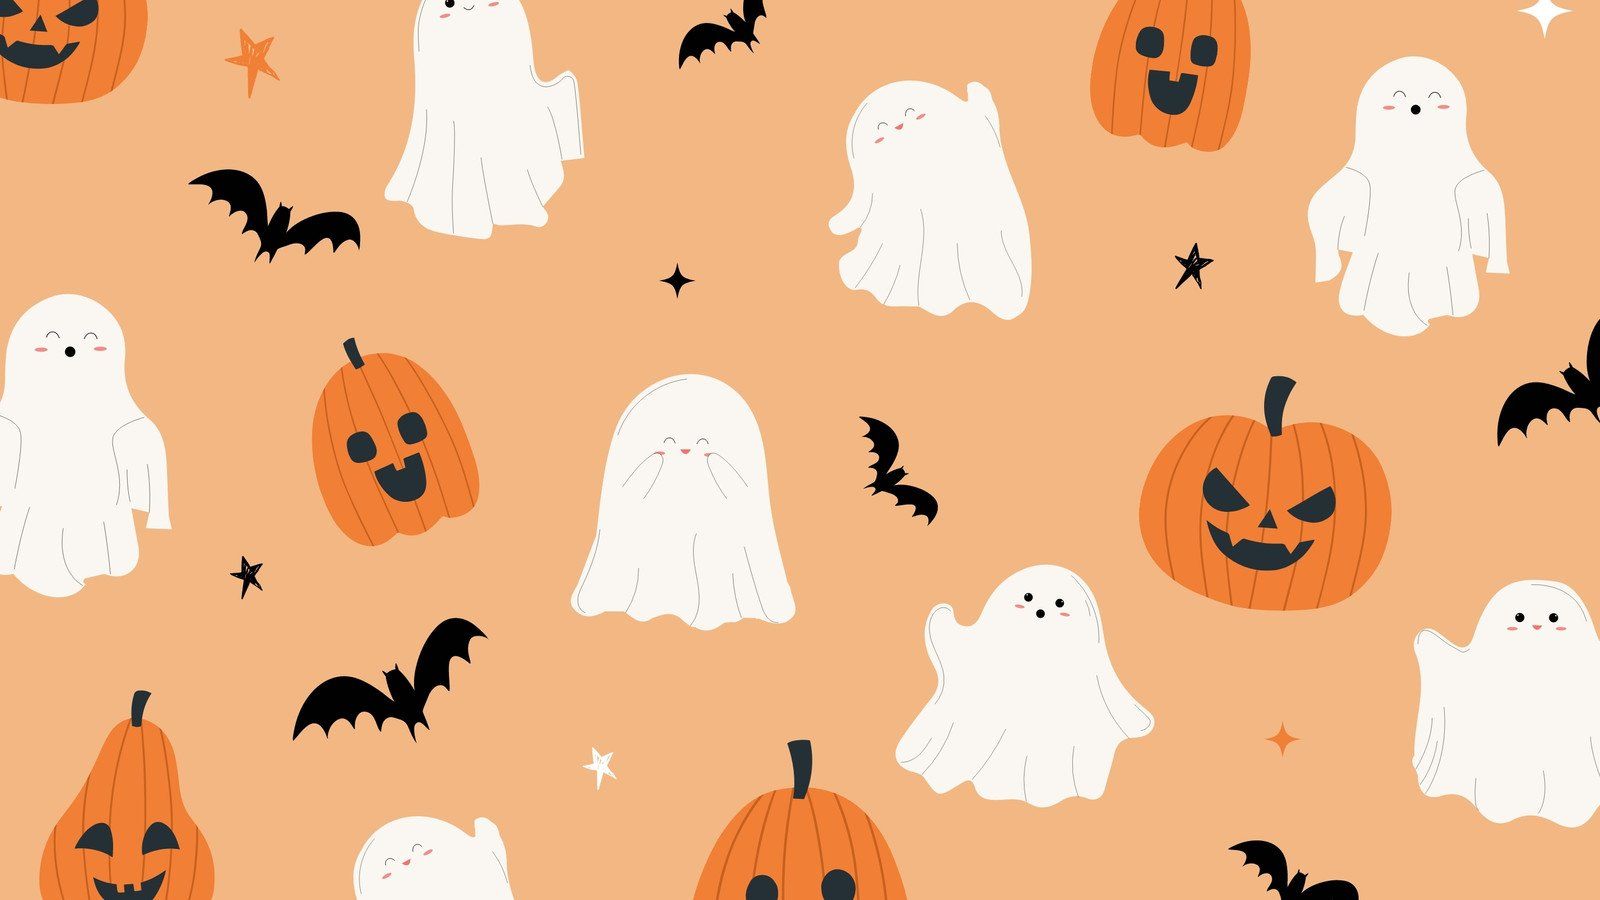 Halloween desktop wallpaper